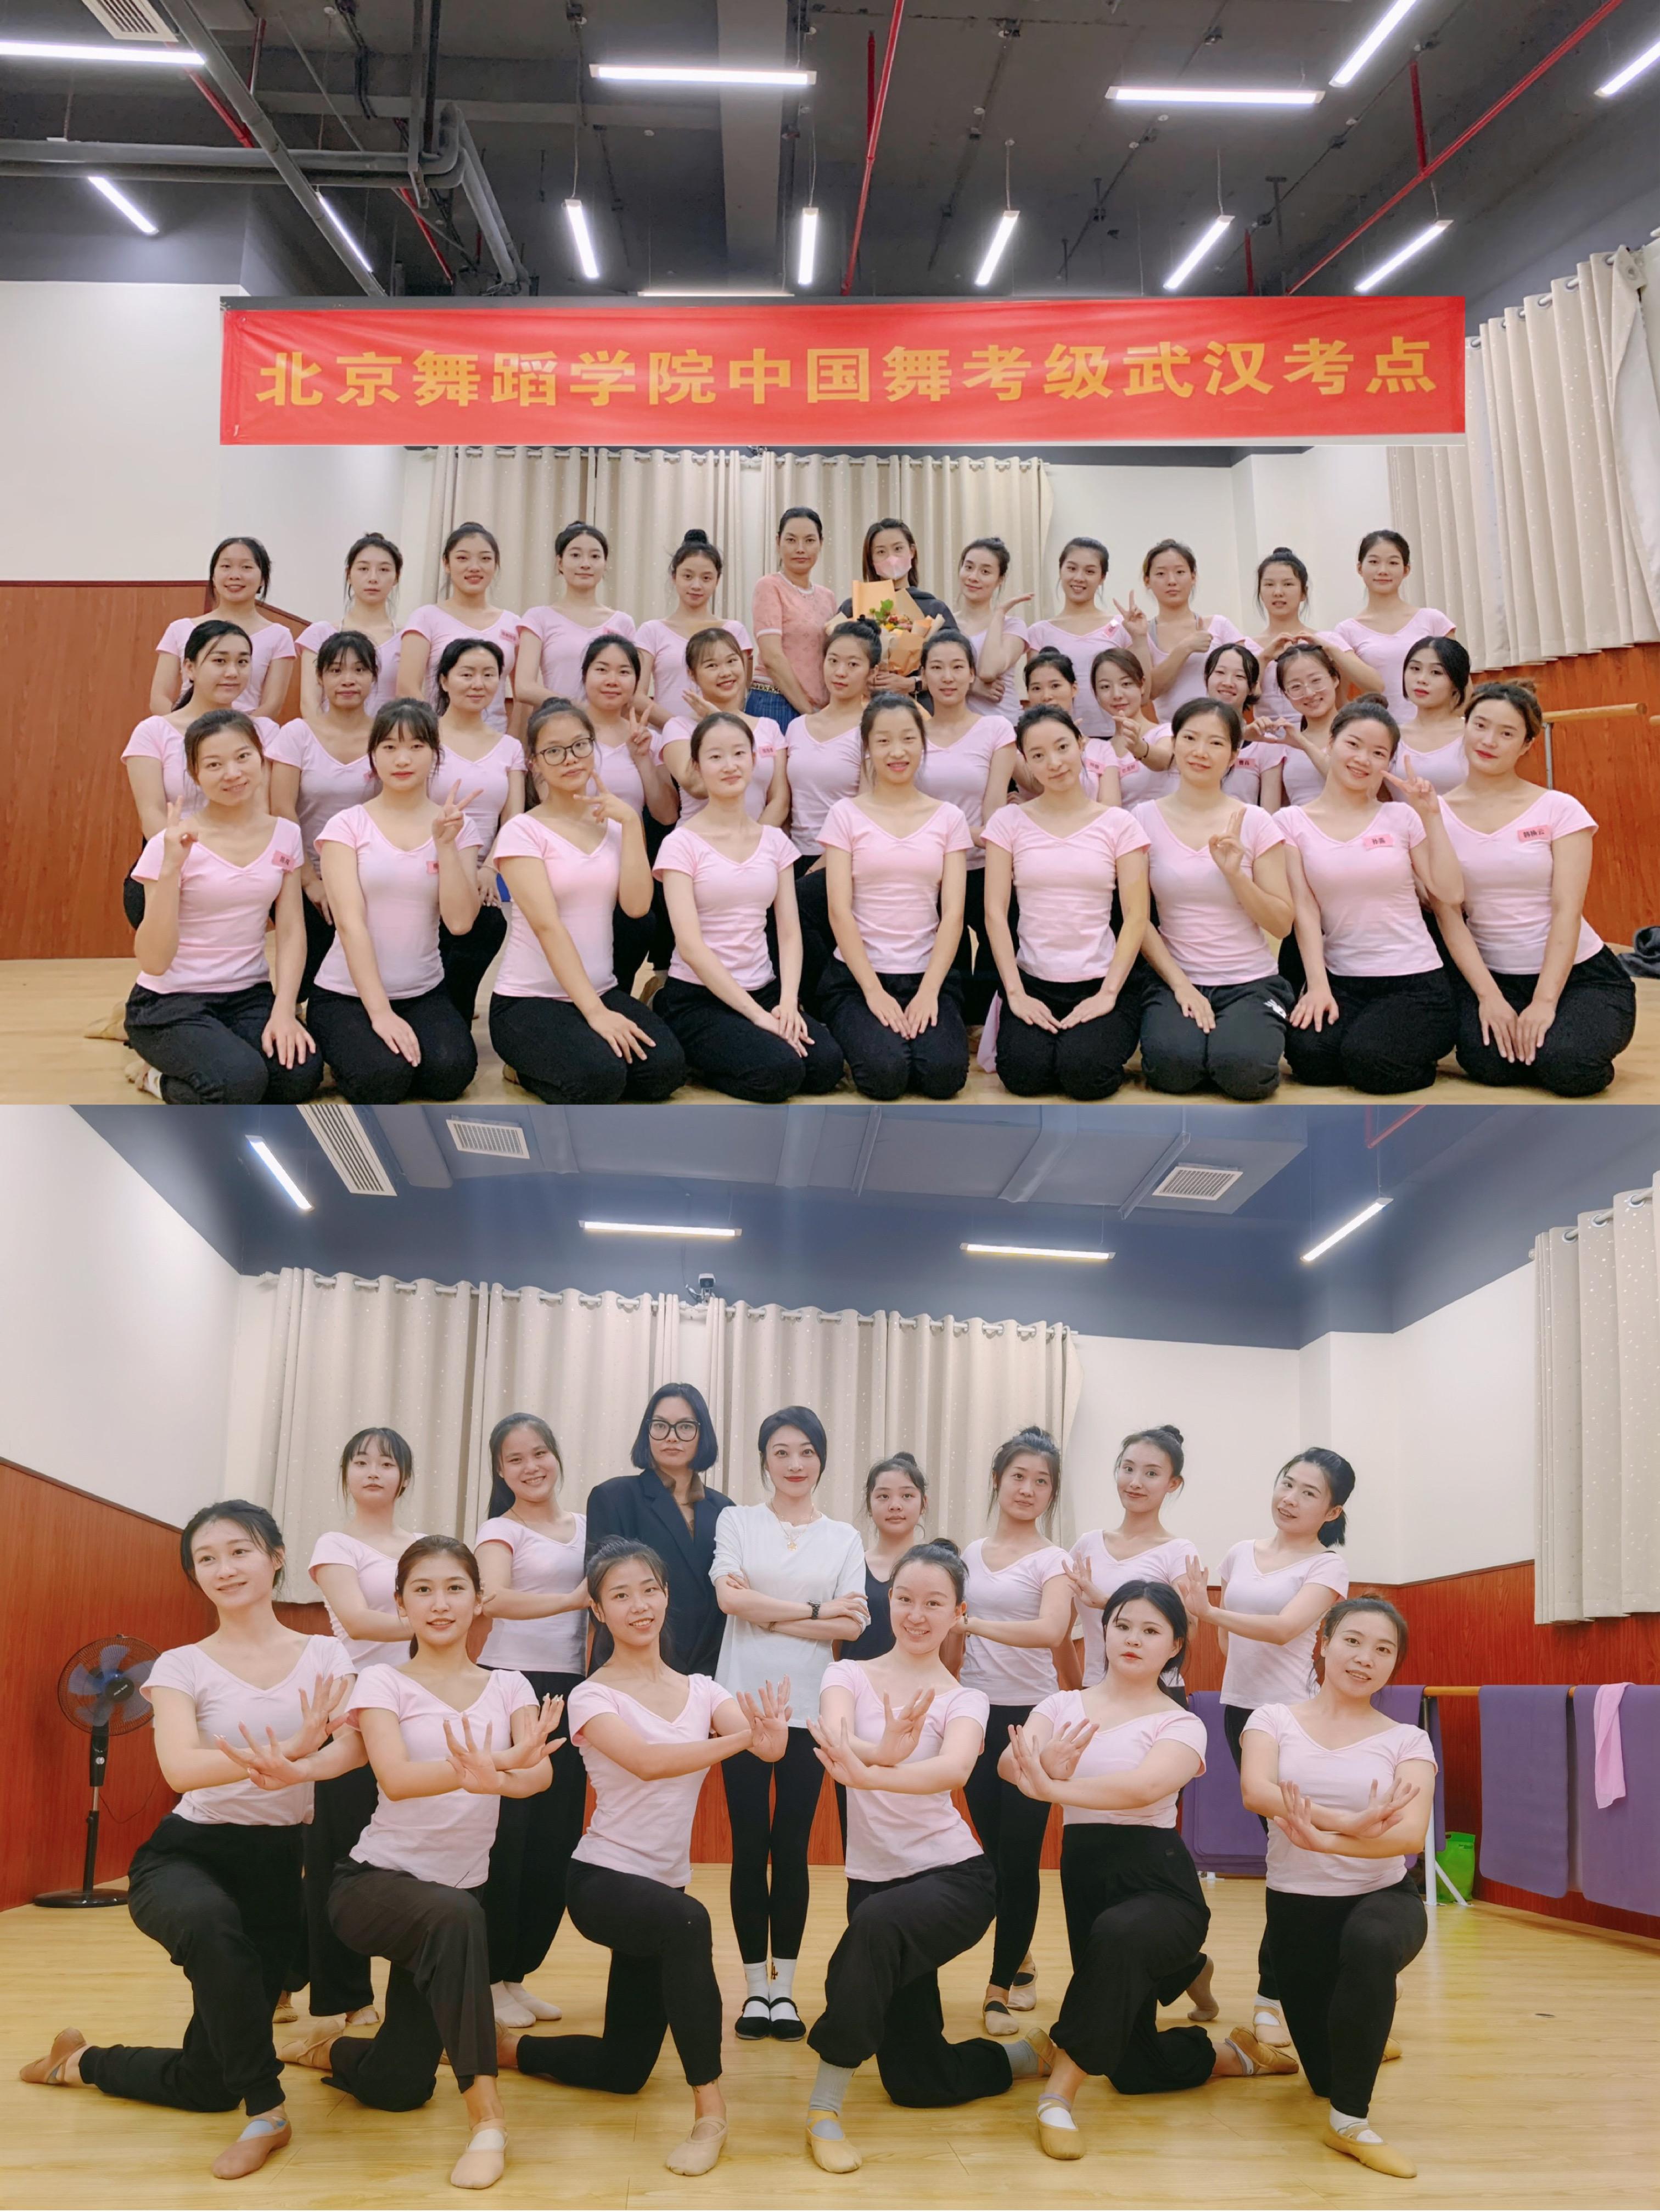 9622年北京舞蹈学院中国舞教师班国庆圆满结束96 北舞考级湖北